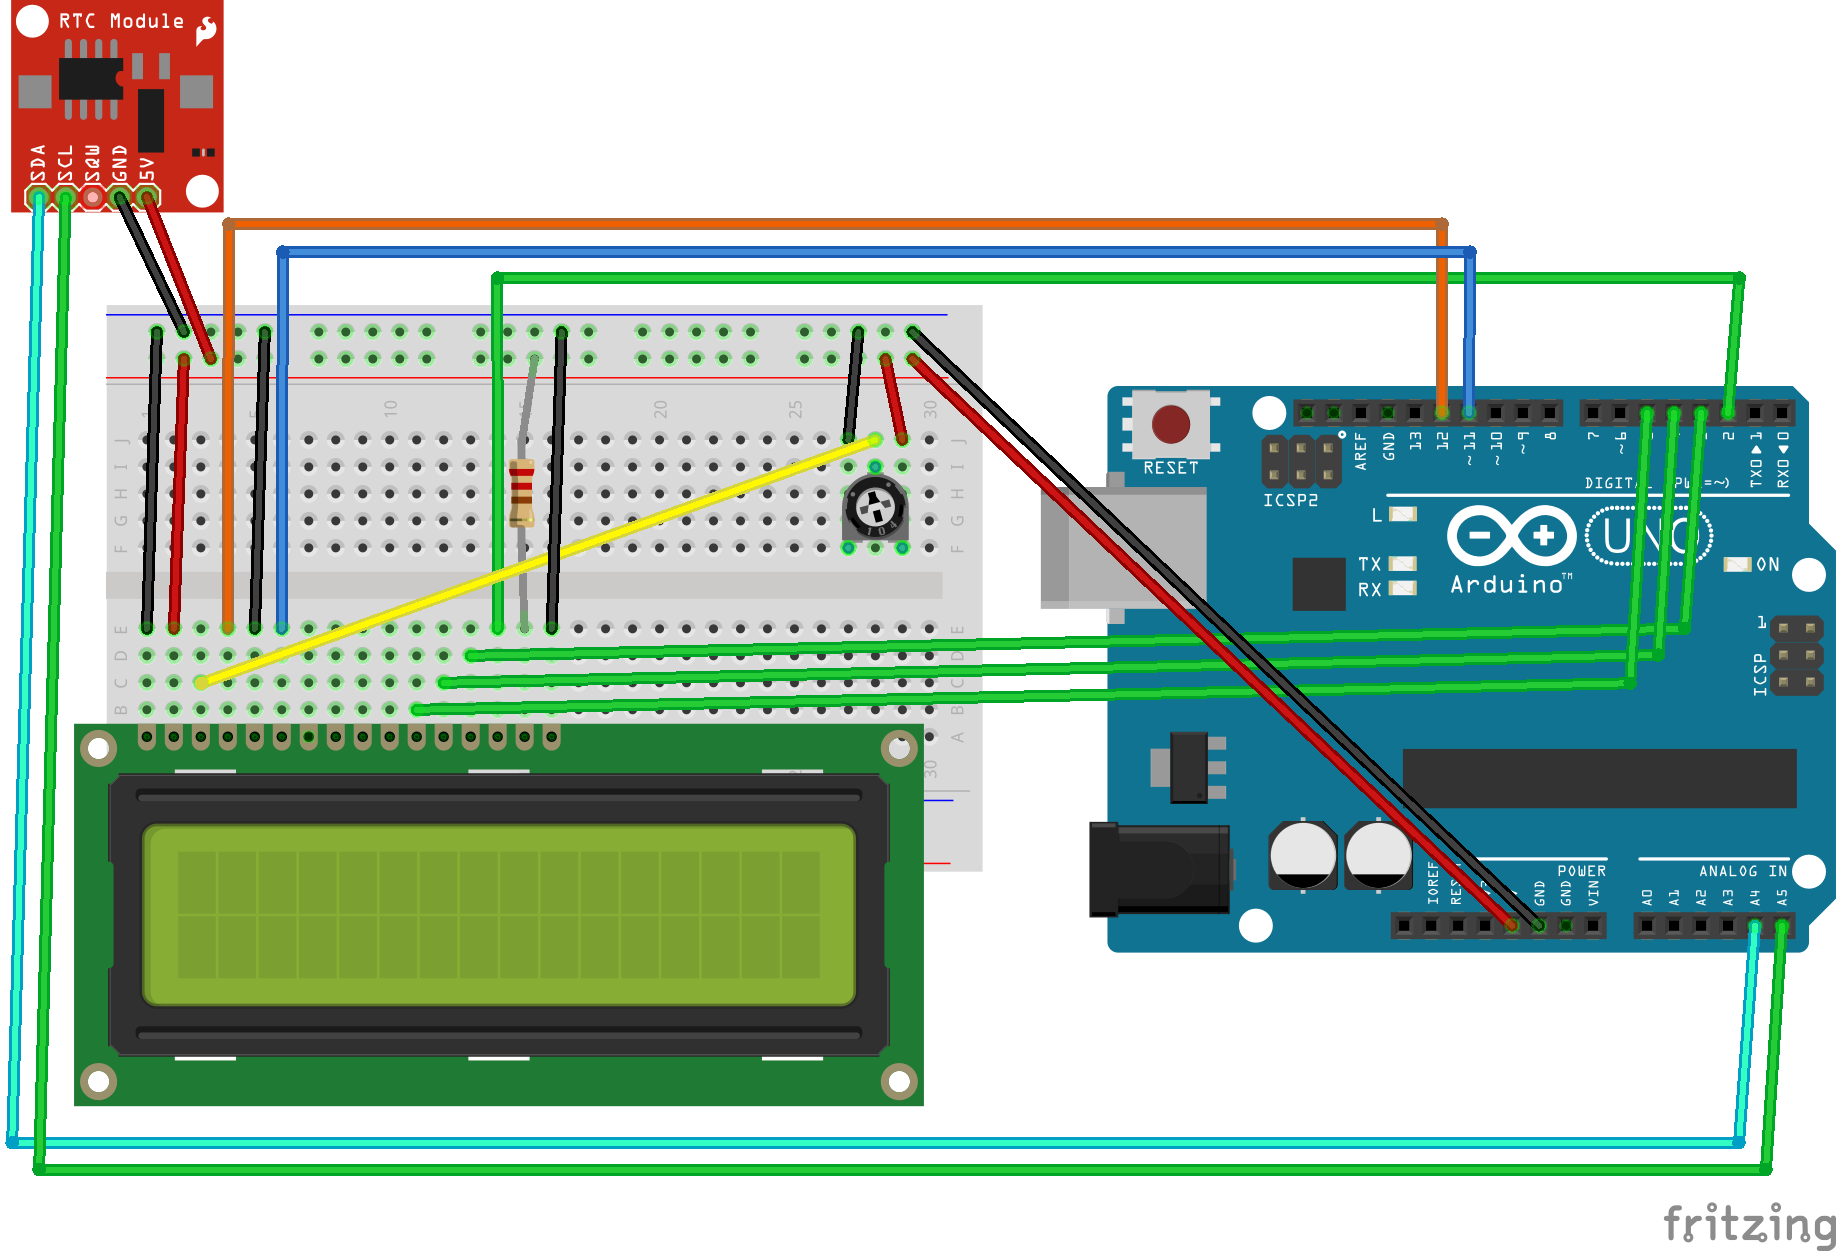 Passo 2: Montagem do circuito Acompanhar a sequência de montagem: Pino 1 do LCD ligado ao GND do Arduino; Pino 2 do LCD ligado ao 5V do Arduino; Pino 3 do LCD ligado ao pino central do potenciômetro